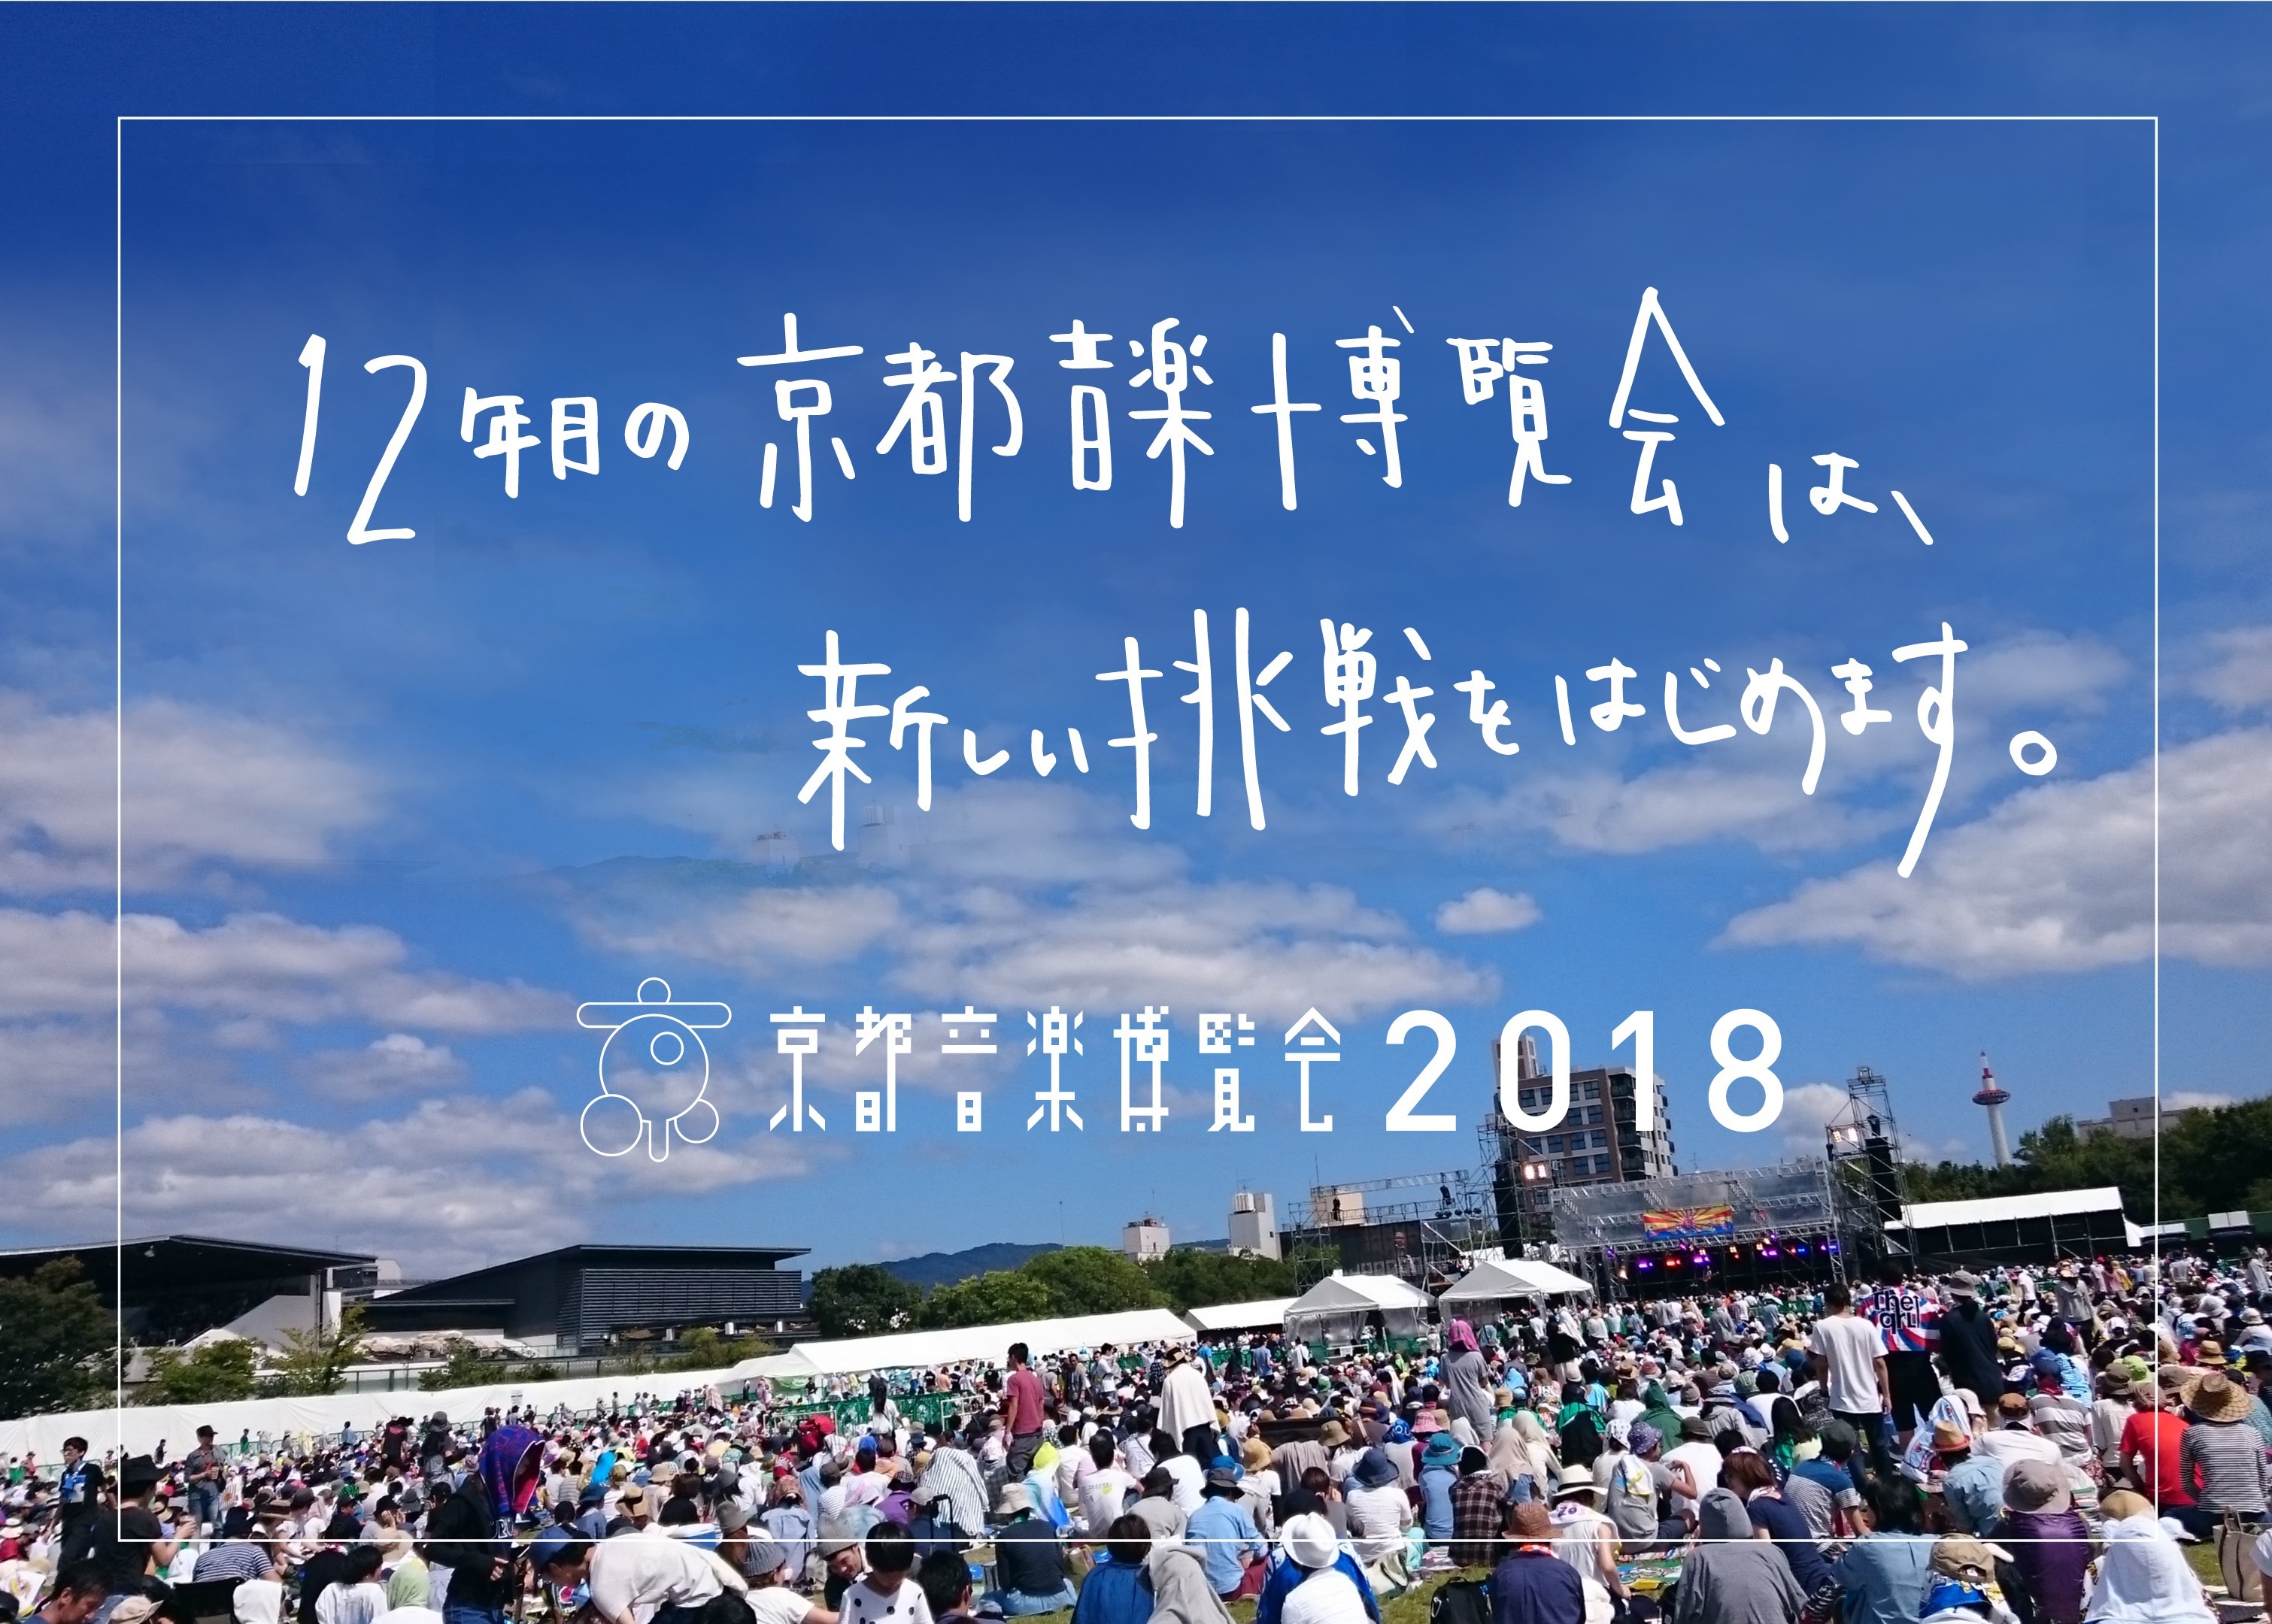 安い売上 京都音楽博覧会2022 in 梅小路公園 国内アーティスト